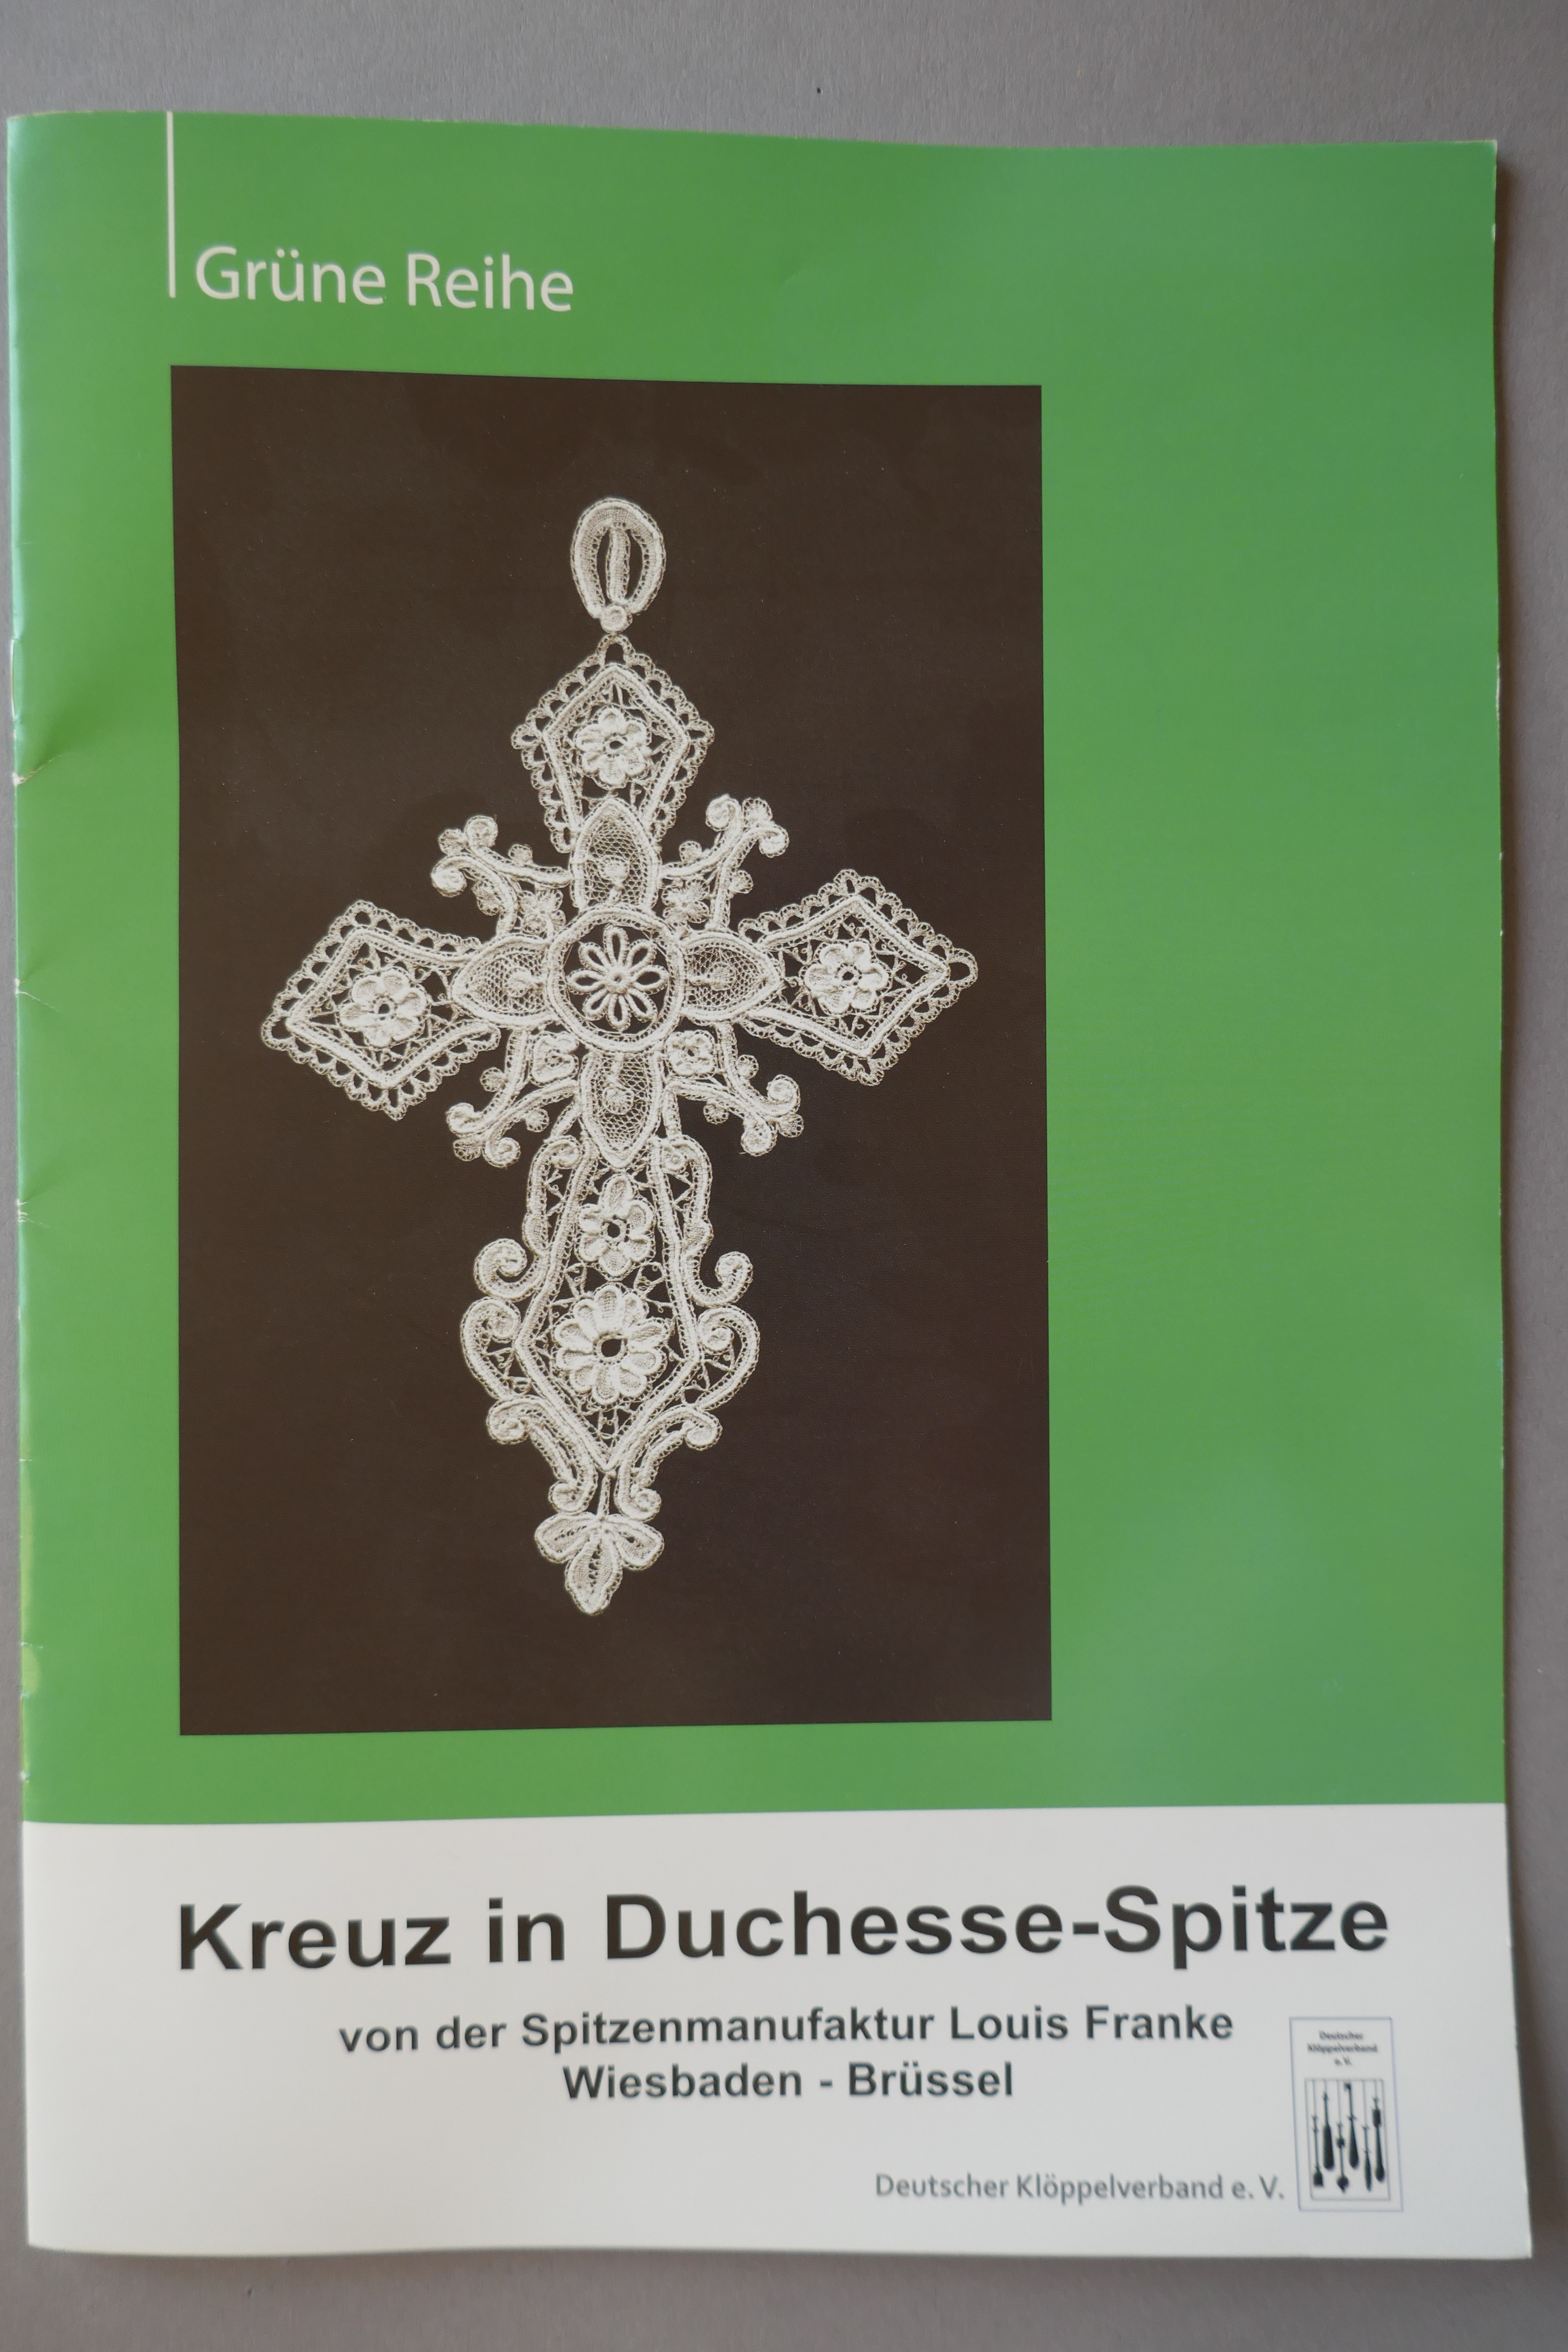 Kreuz in Duchesse-Spitze